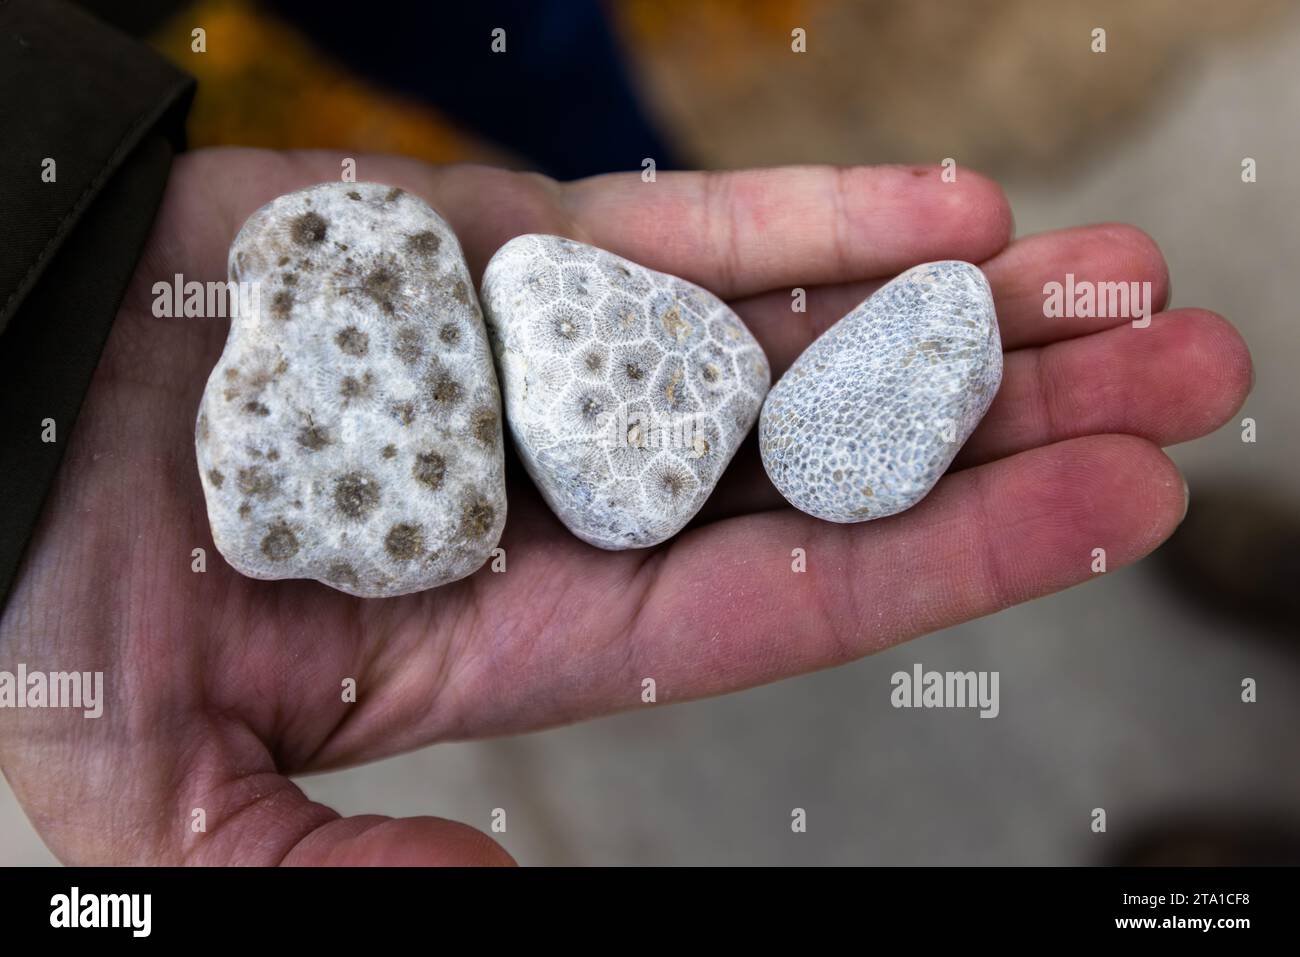 Petoskey-Steine wurden erstmals in Petoskey, Michigan, gefunden. Der Stein, der aus fossilen Korallenskeletten besteht, ist auch am Strand Charlevoix zu finden. Wenn der Stein befeuchtet wird, wird ein Wabenmuster sichtbar. Charlevoix- und Petoskey-Steine sind am Charlevoix-Strand zu finden, besonders bei starken Winden und Wellen. Charlevoix, Usa Stockfoto